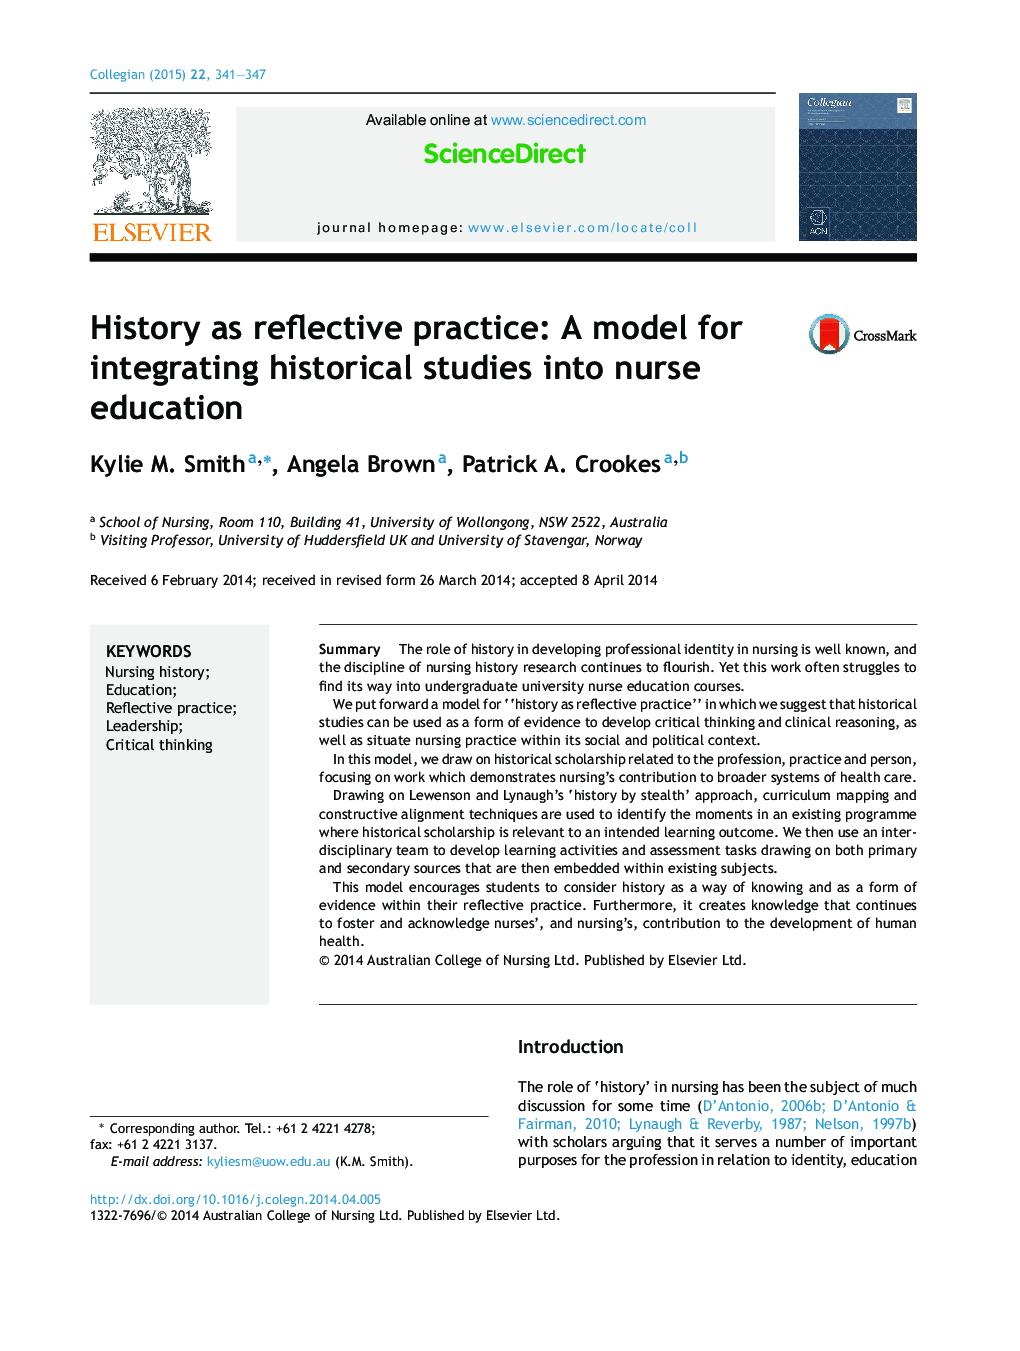 تاریخ به عنوان عمل بازتابنده: یک مدل برای ادغام مطالعات تاریخی در آموزش پرستار